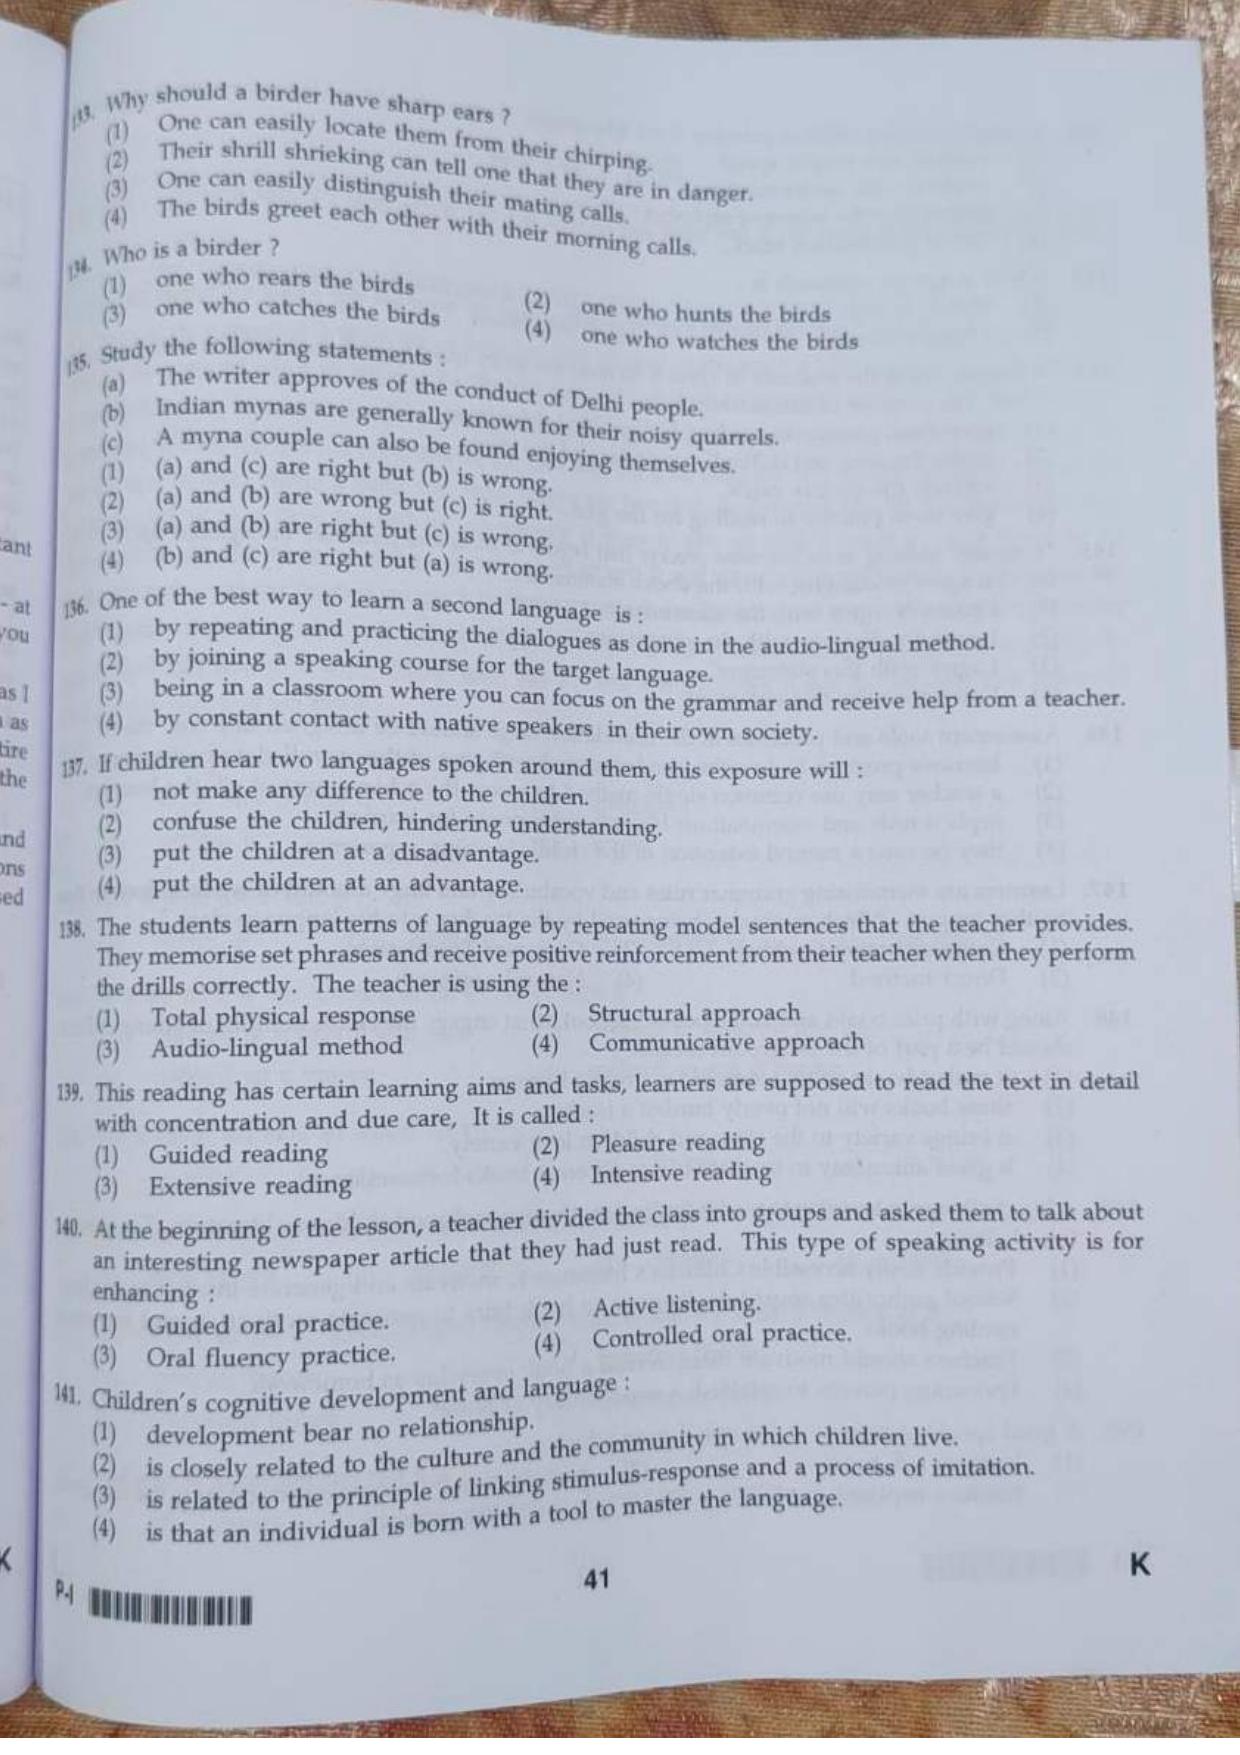 ctet paper 1 question paper SET K - Page 41